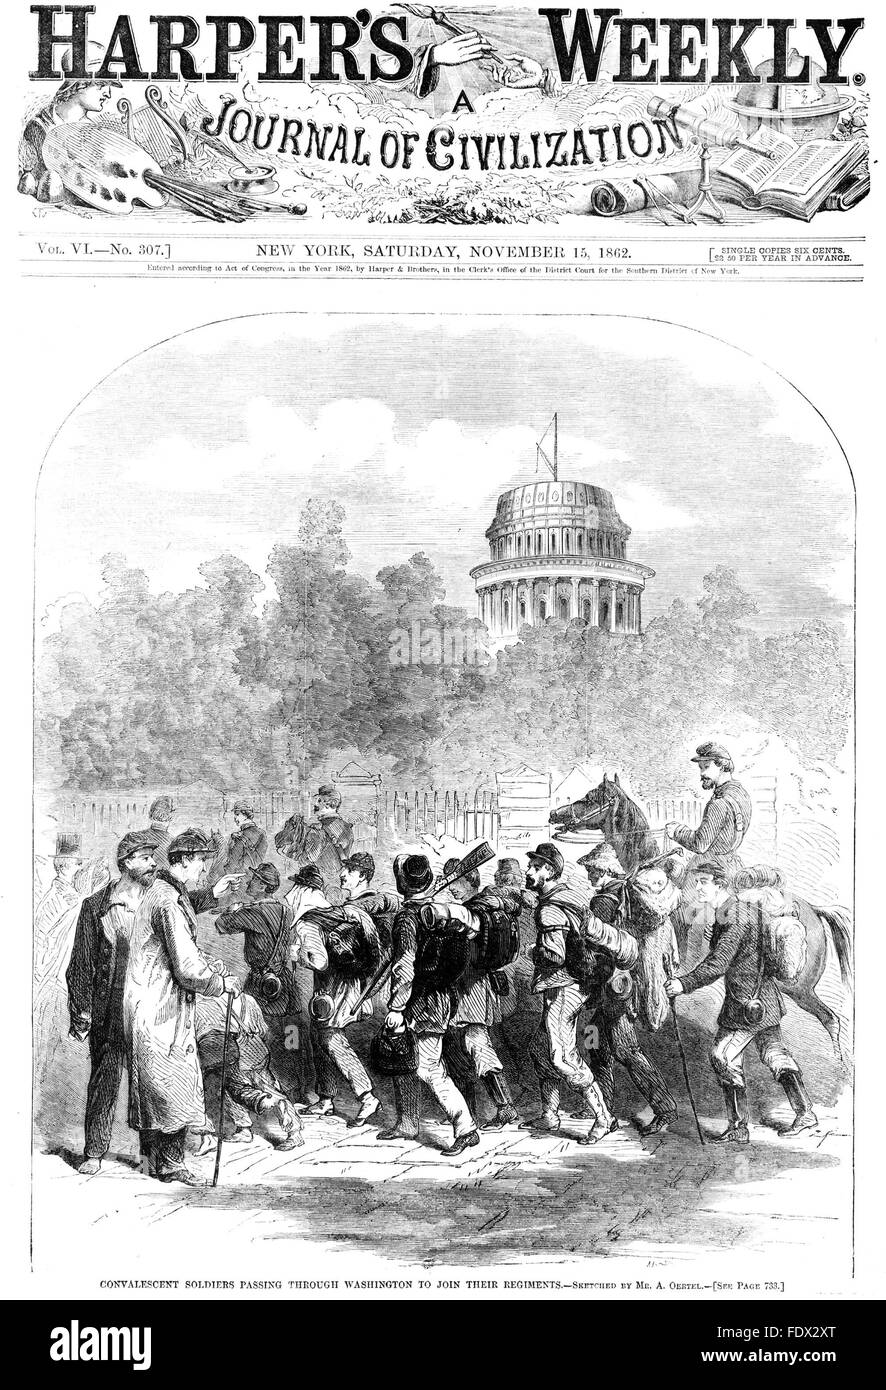 Seconde BATAILLE DE MANASSAS Couvrir de Harper's Weekly 15 novembre 1862 montrant le retrait des soldats de l'Union par l'intermédiaire de Washington Banque D'Images